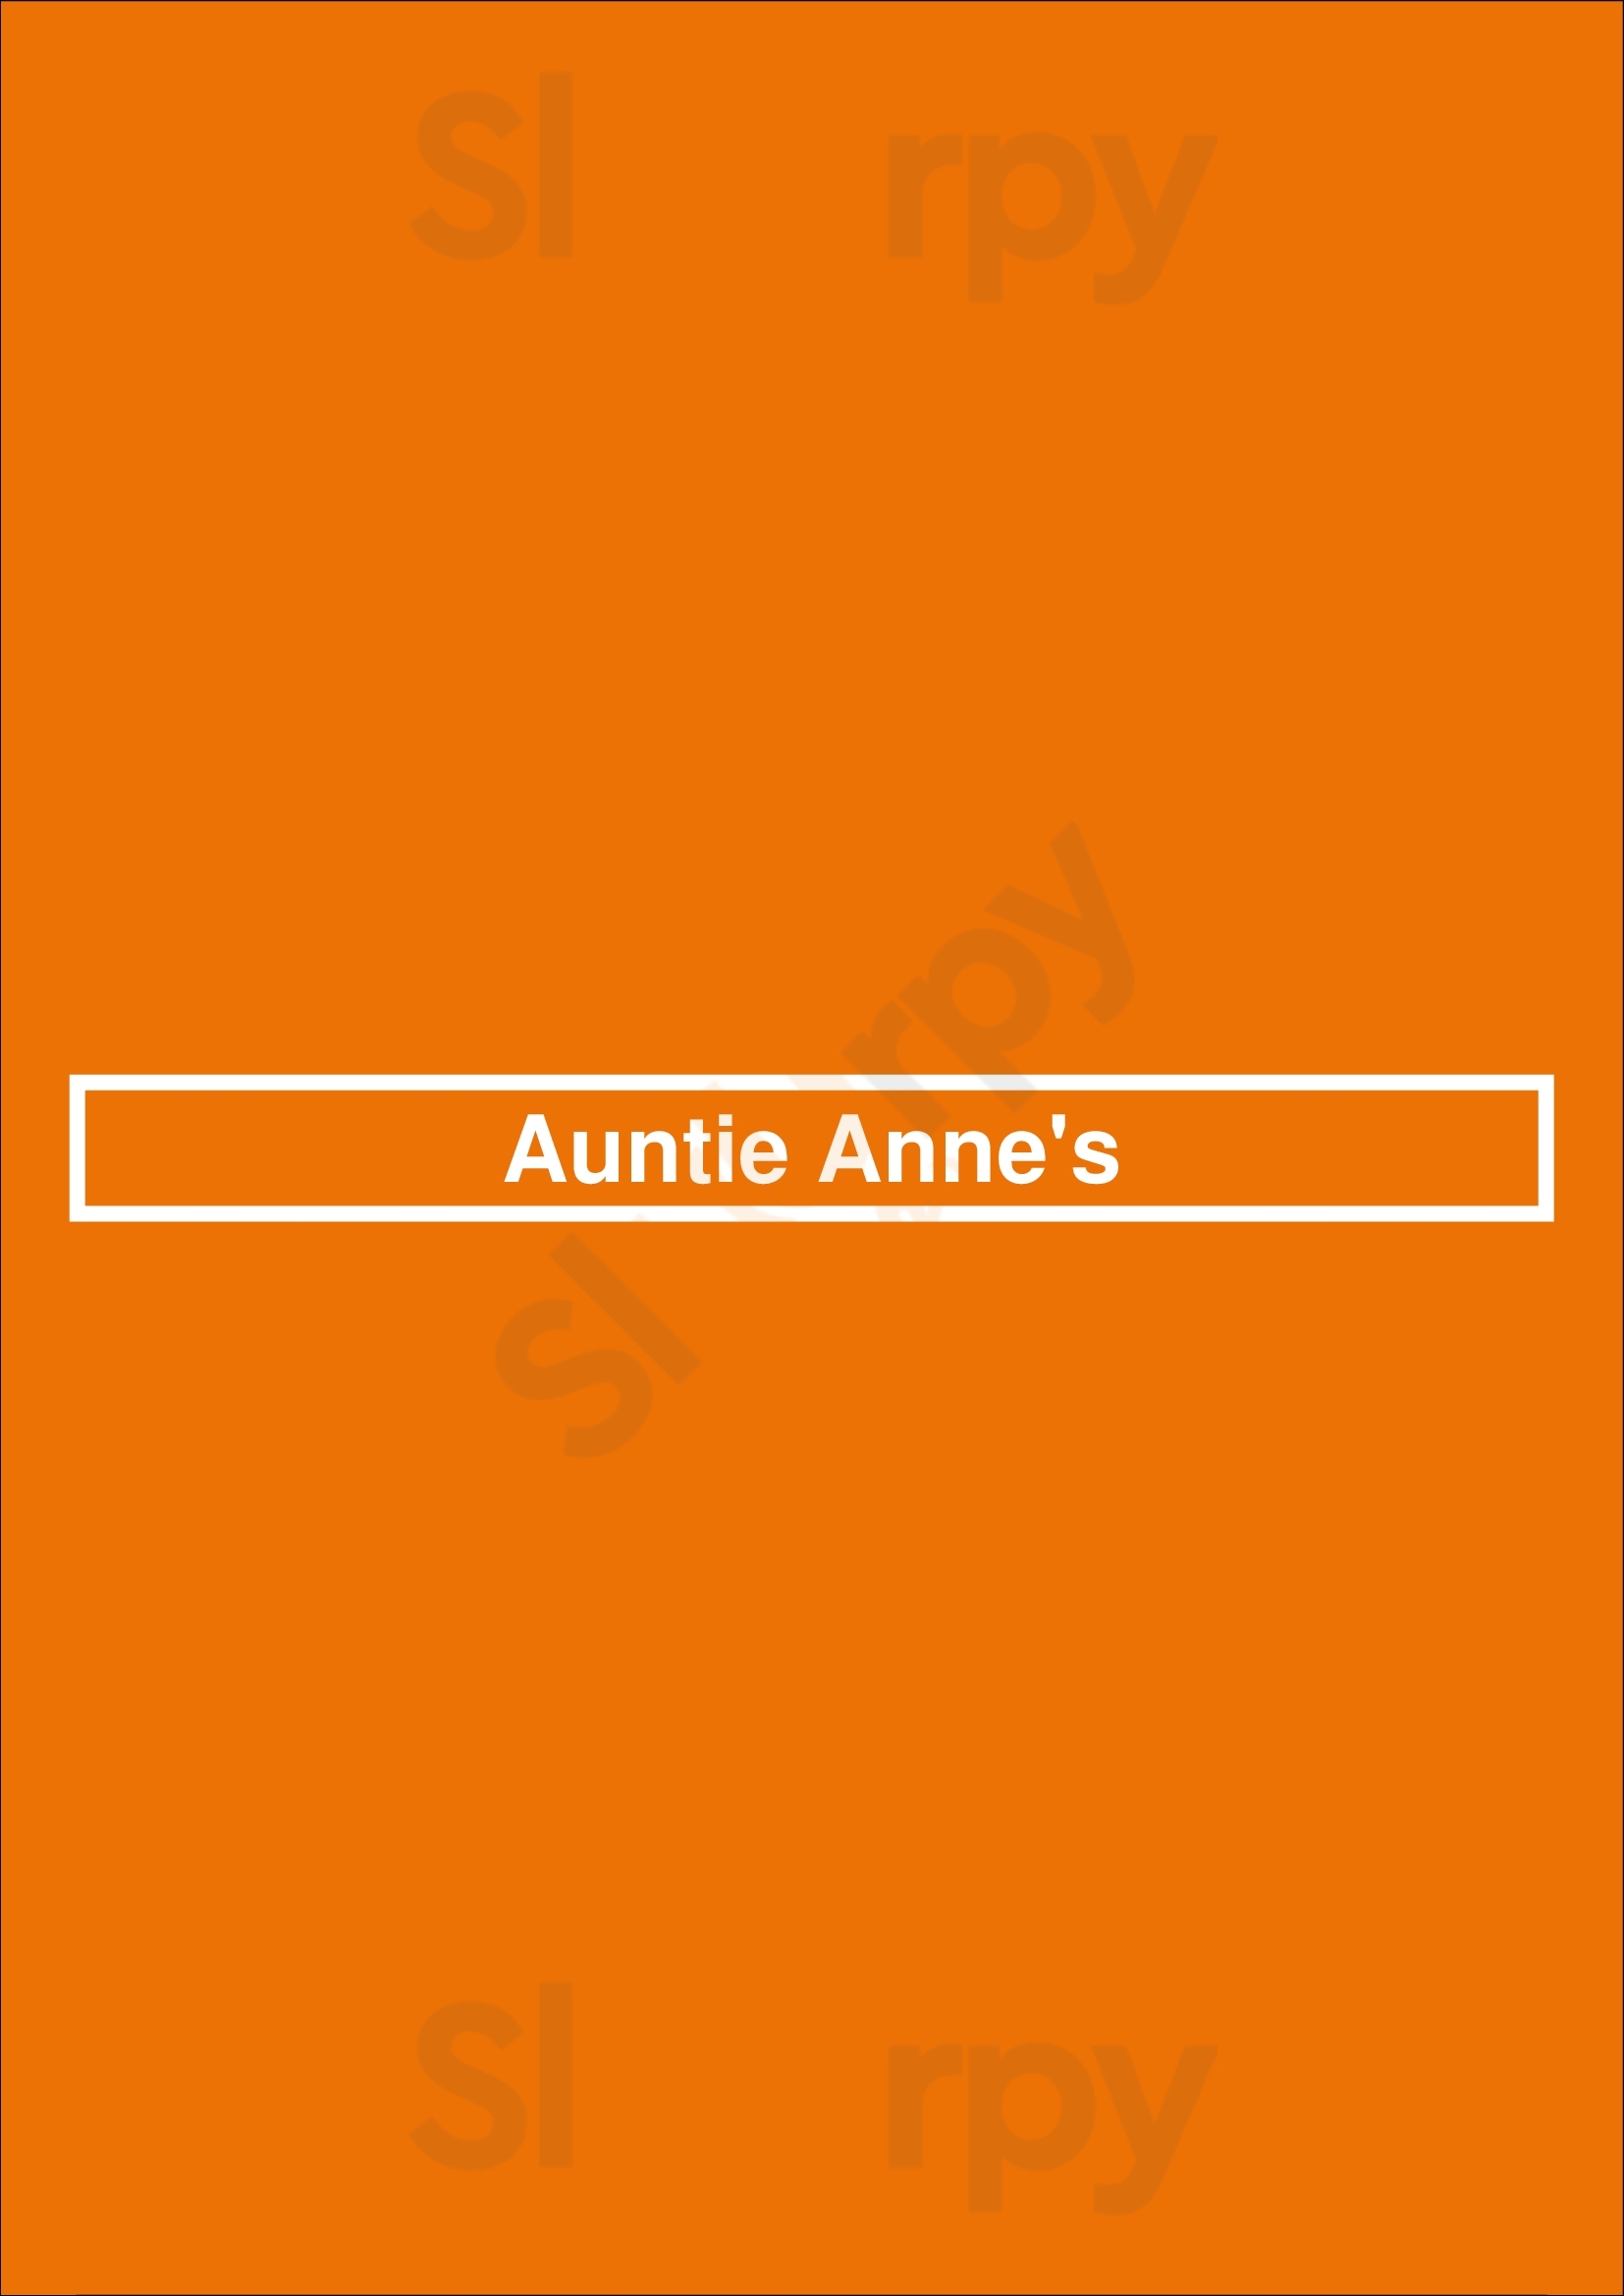 Auntie Anne's Columbus Menu - 1